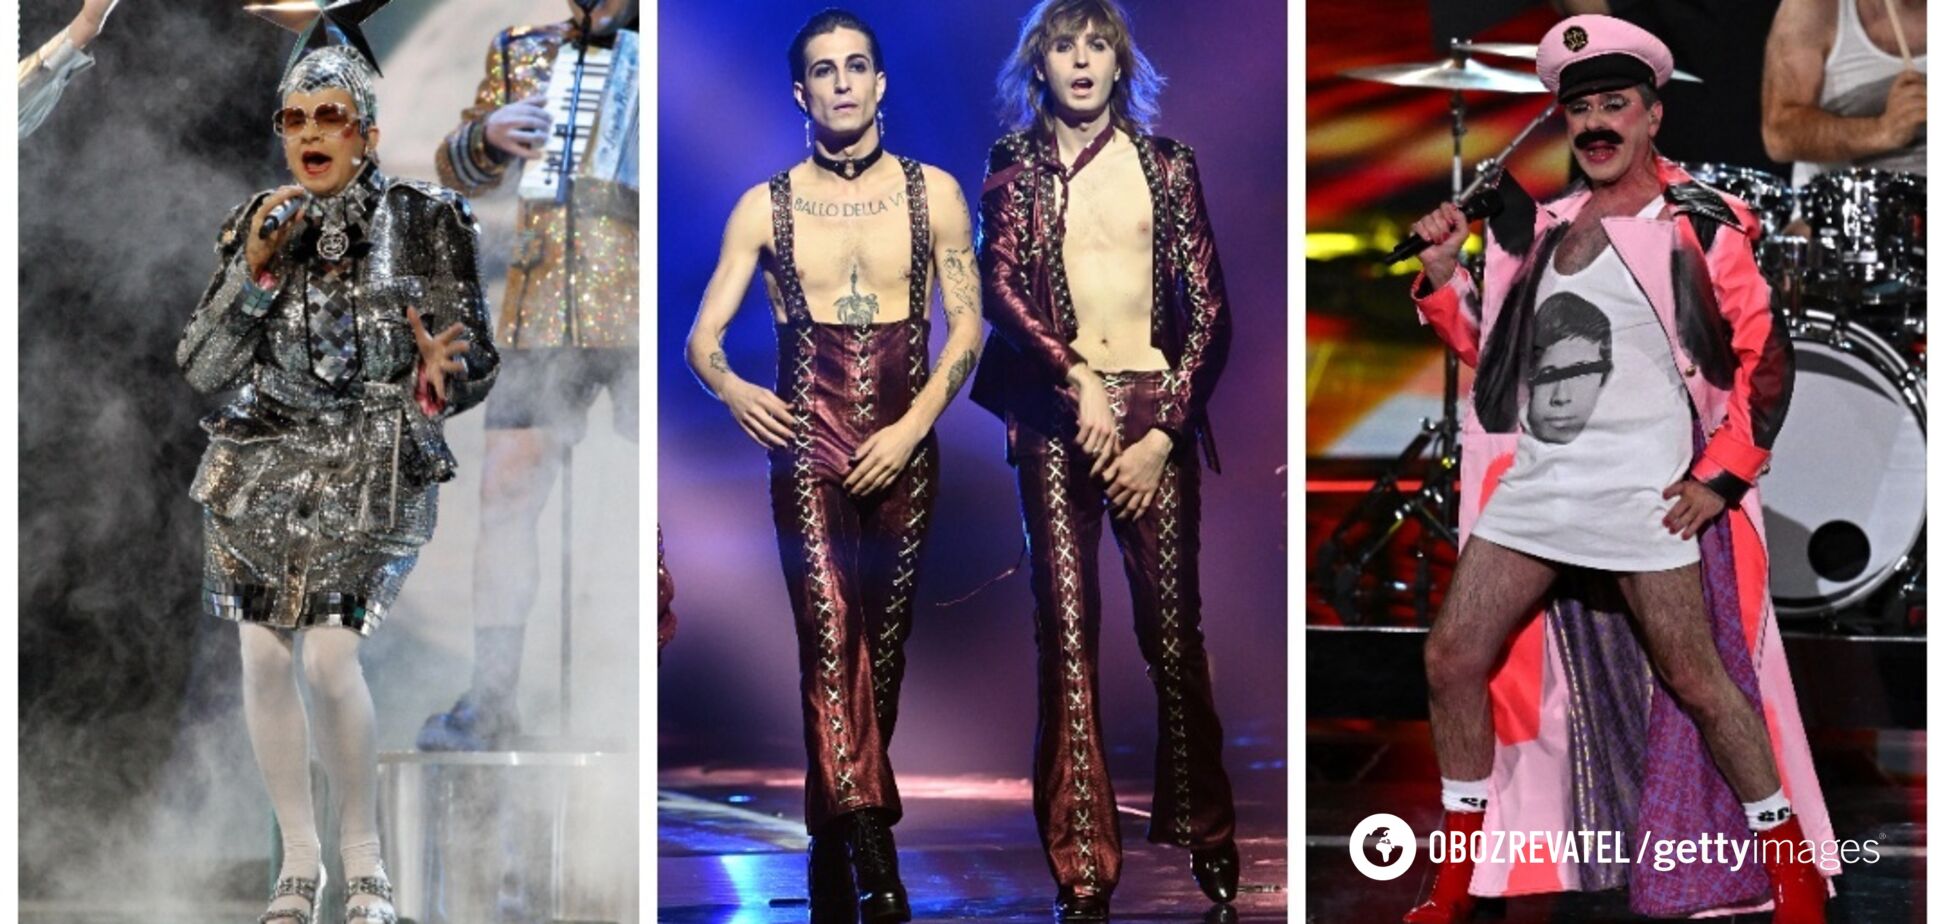 Мужчины на каблуках: 9 звезд, которые в туфлях зажгли сцену Евровидения. Фото